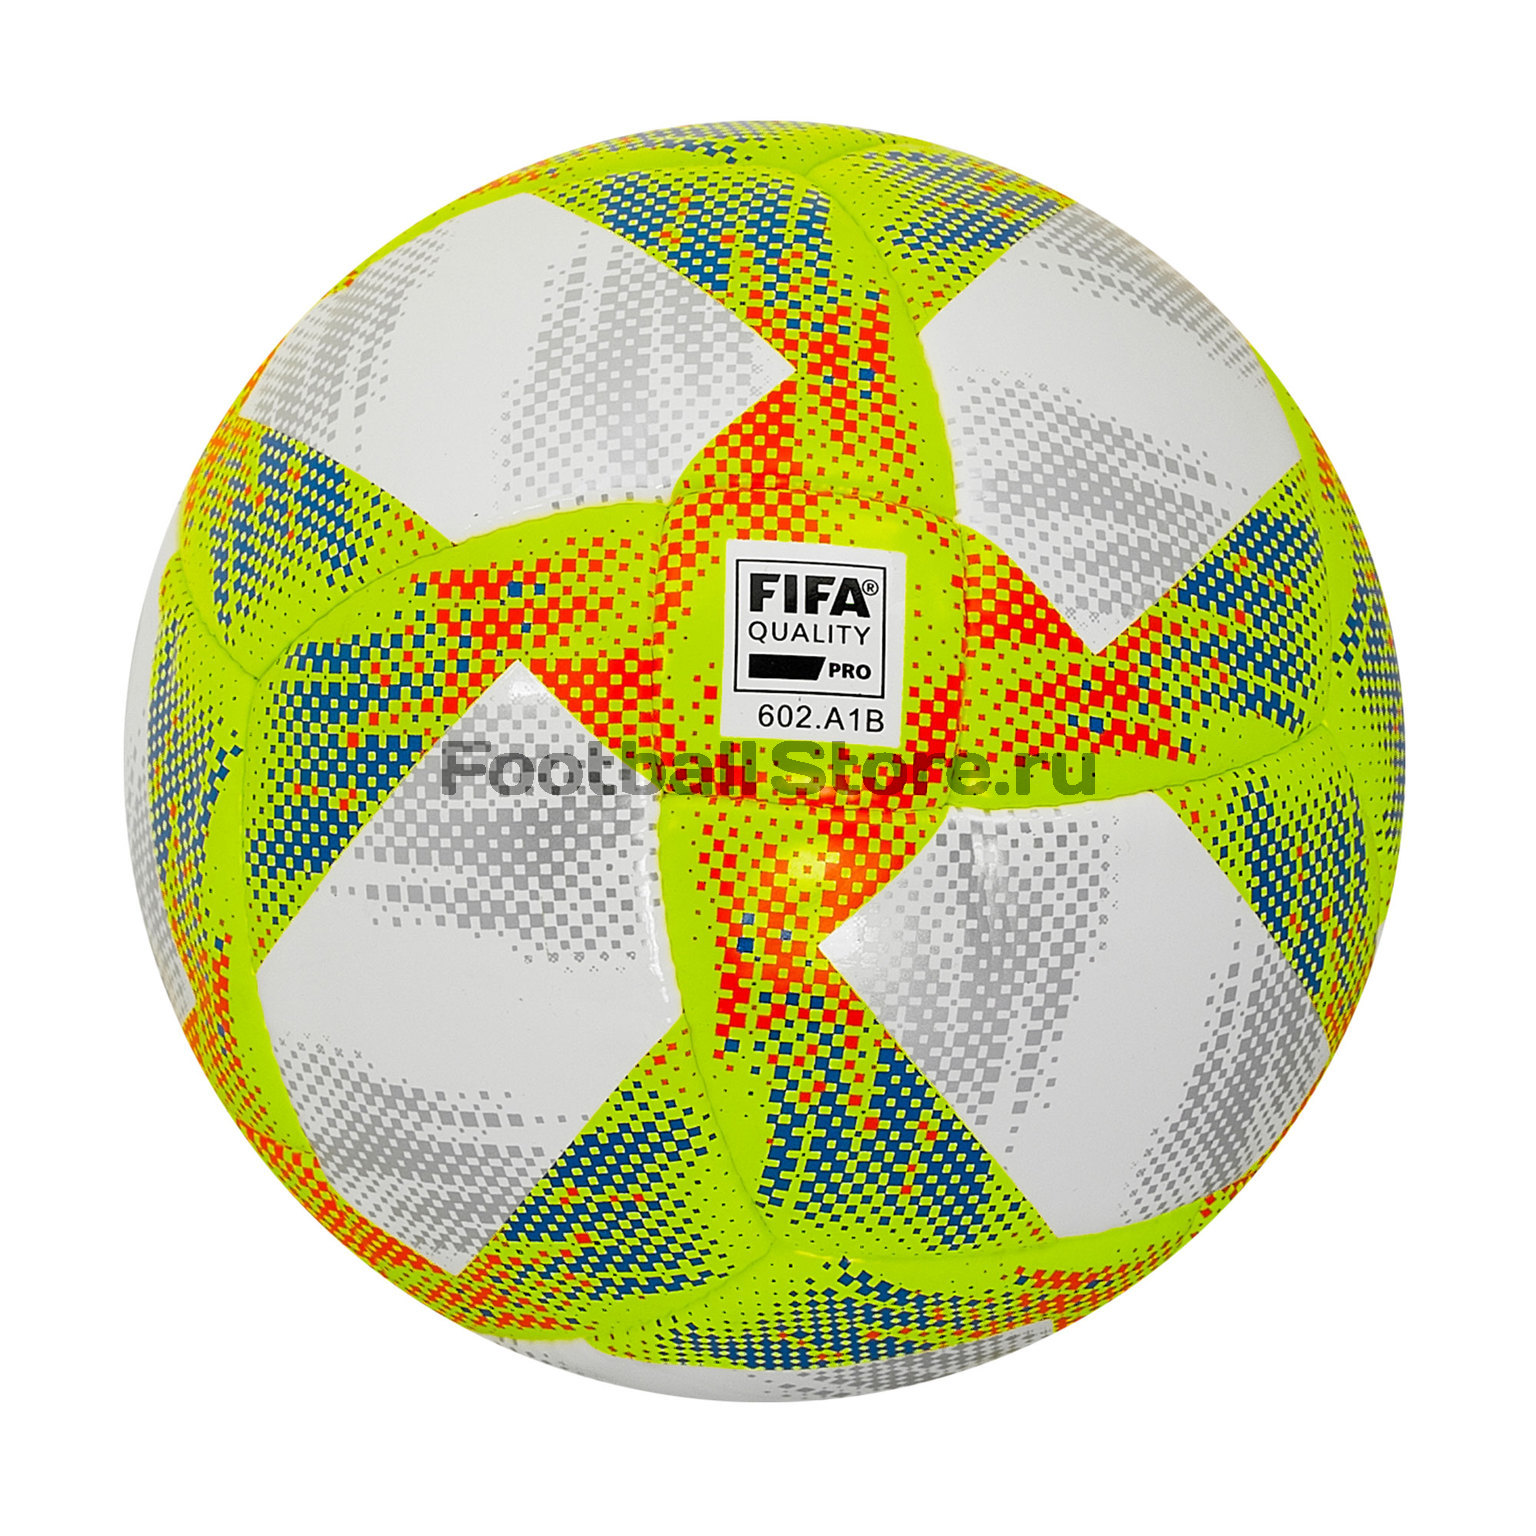 Футзальный мяч Adidas Conext19 Sala65 DN8644